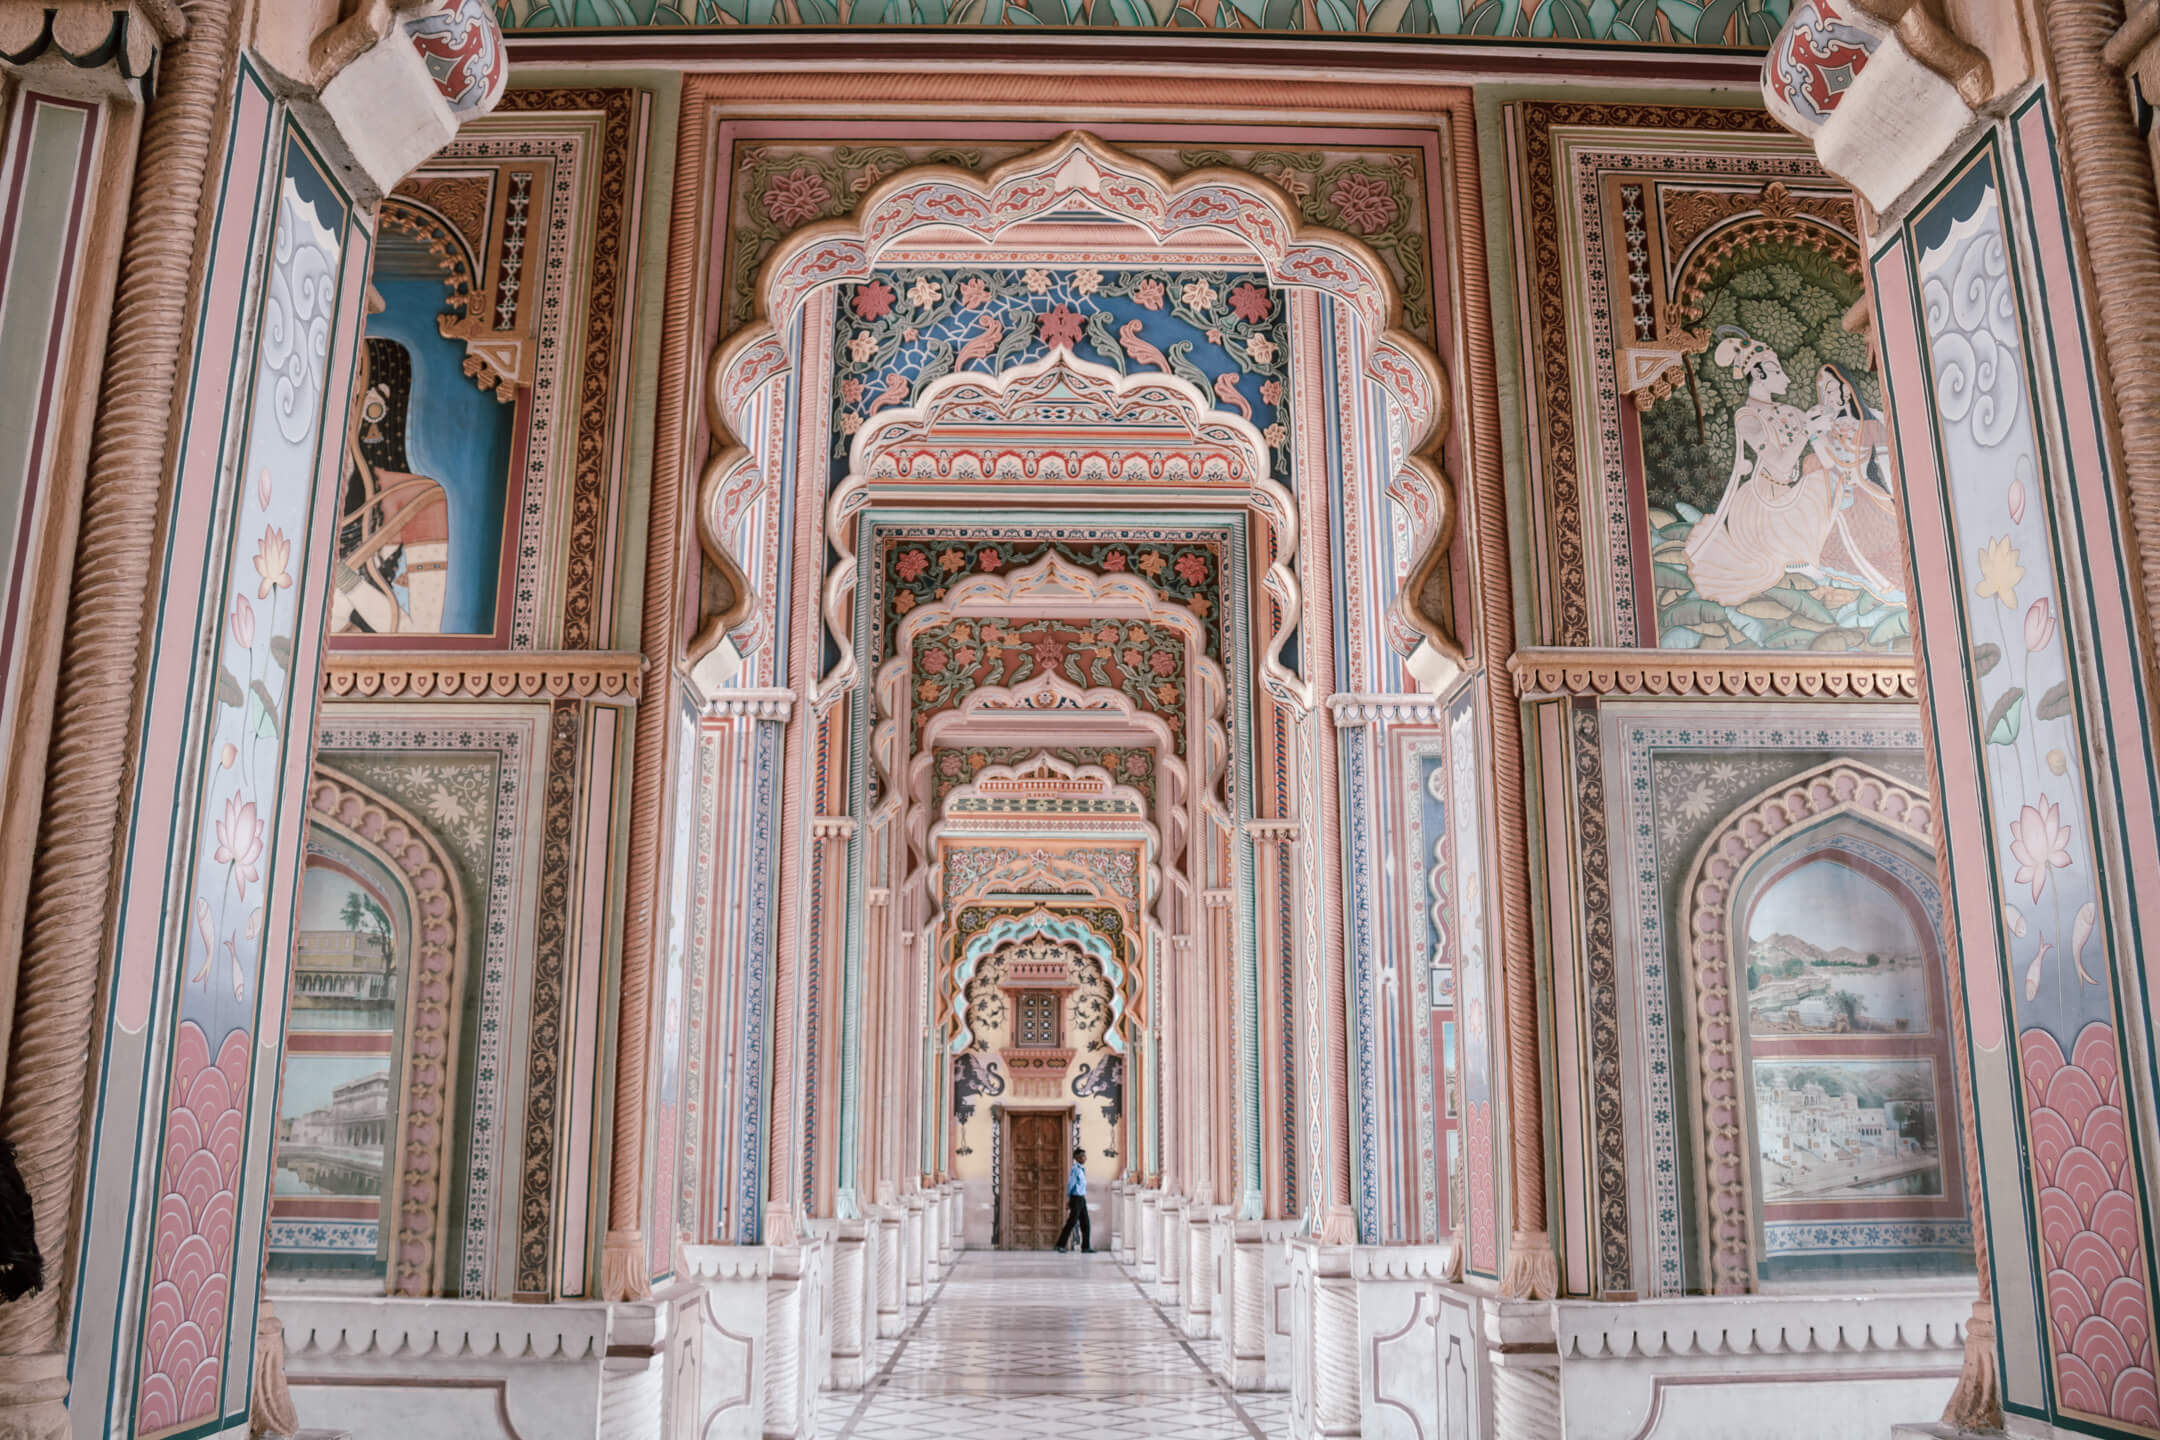 Patrika Gate in India